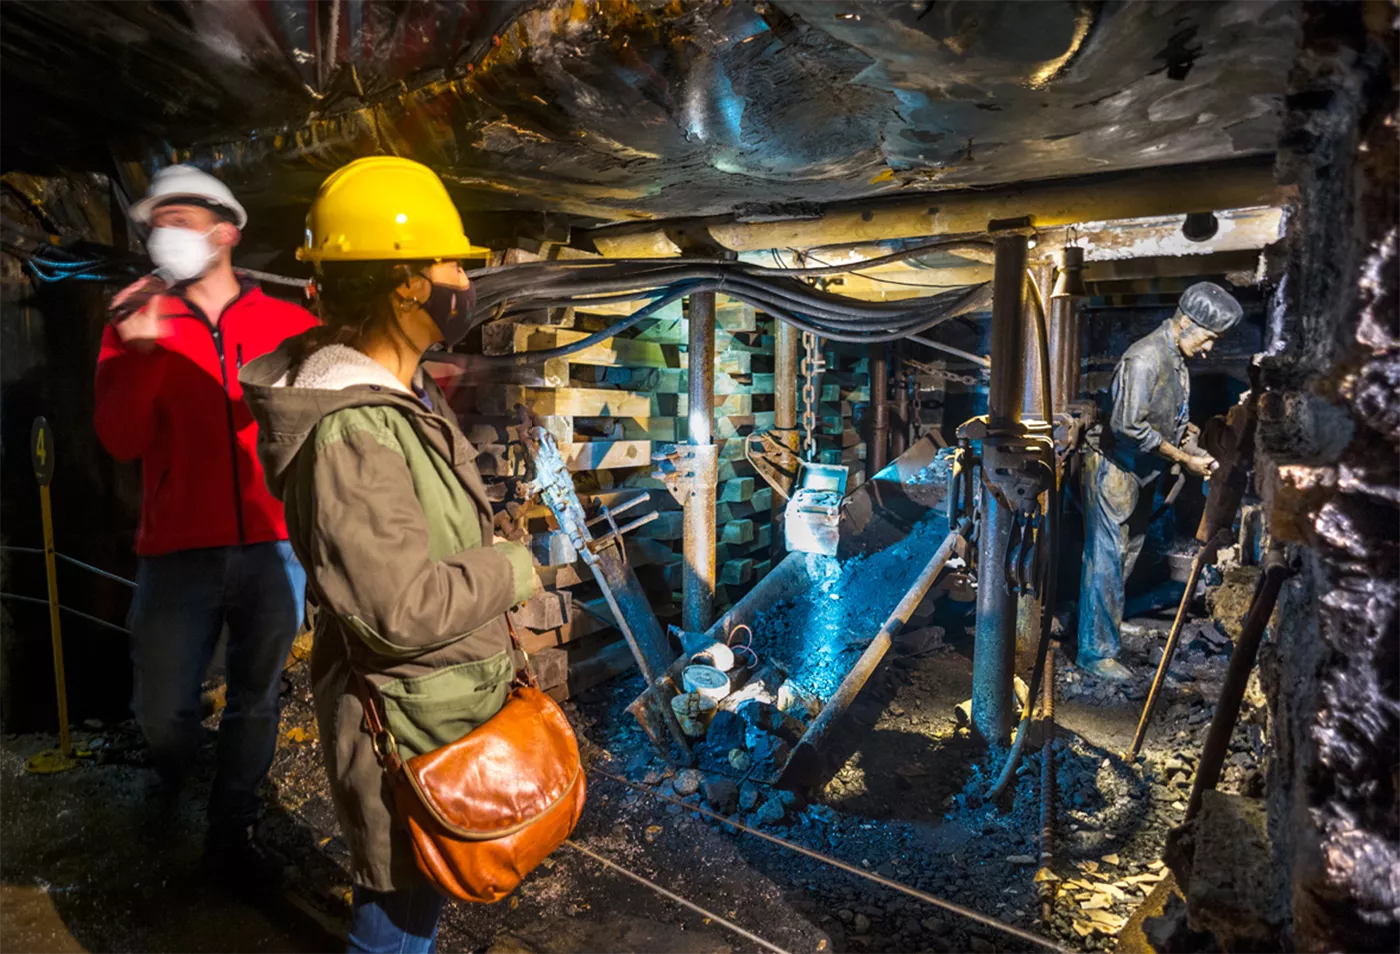 Els visitants baixen a la mina amb un trenet per veure, a través de diverses escenes i maquinària, l’evolució de l’extracció del carbó